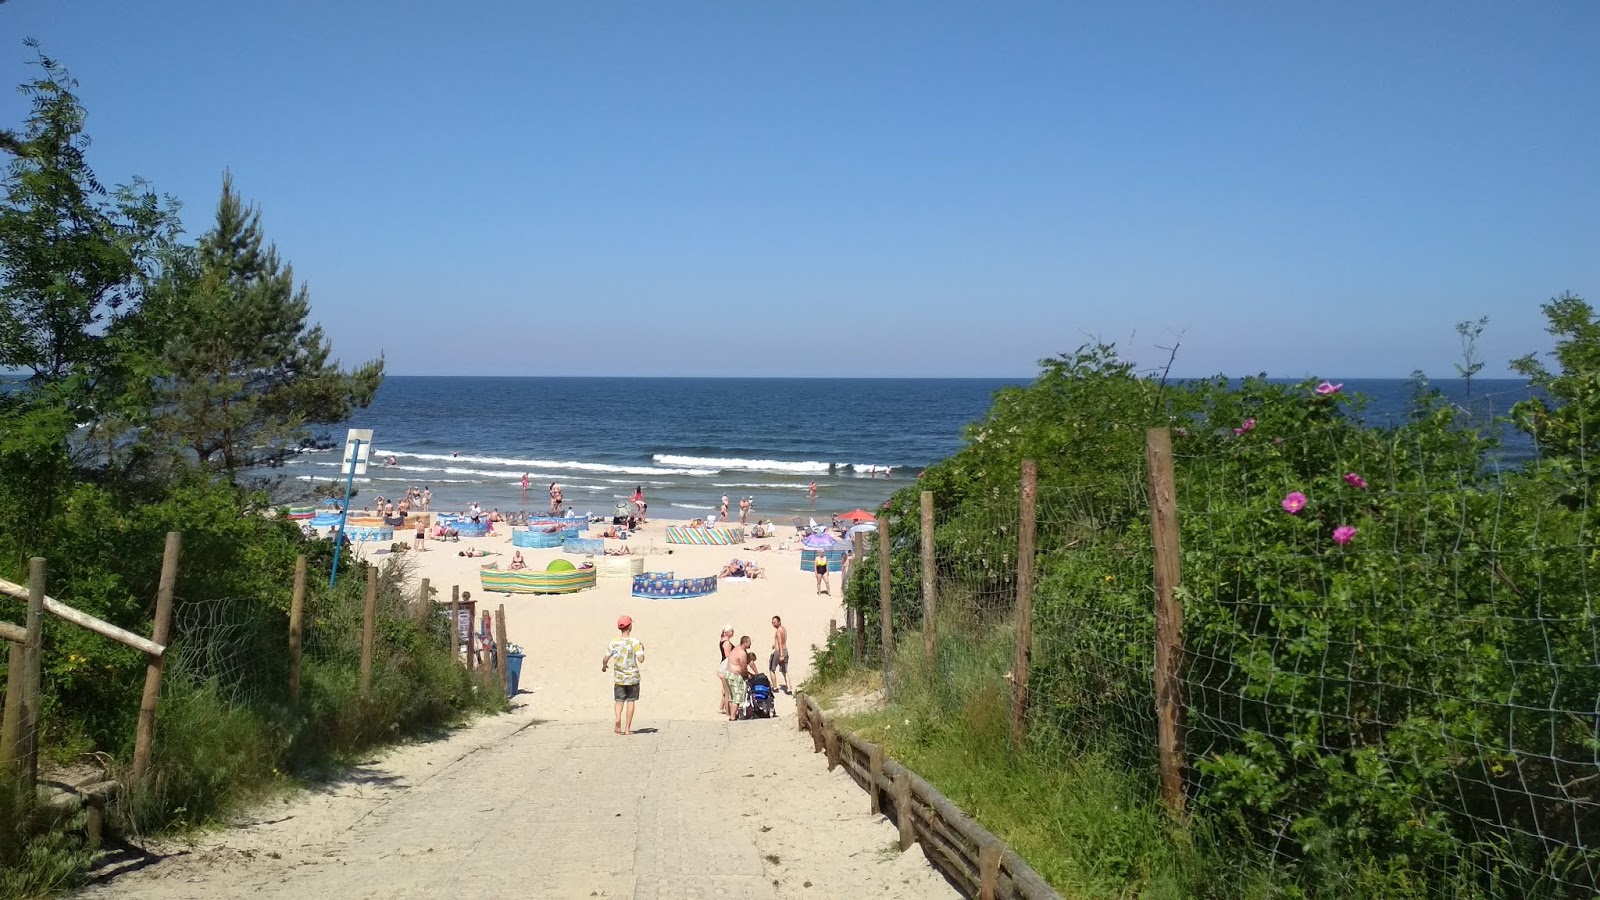 Stegna Morska beach'in fotoğrafı - rahatlamayı sevenler arasında popüler bir yer